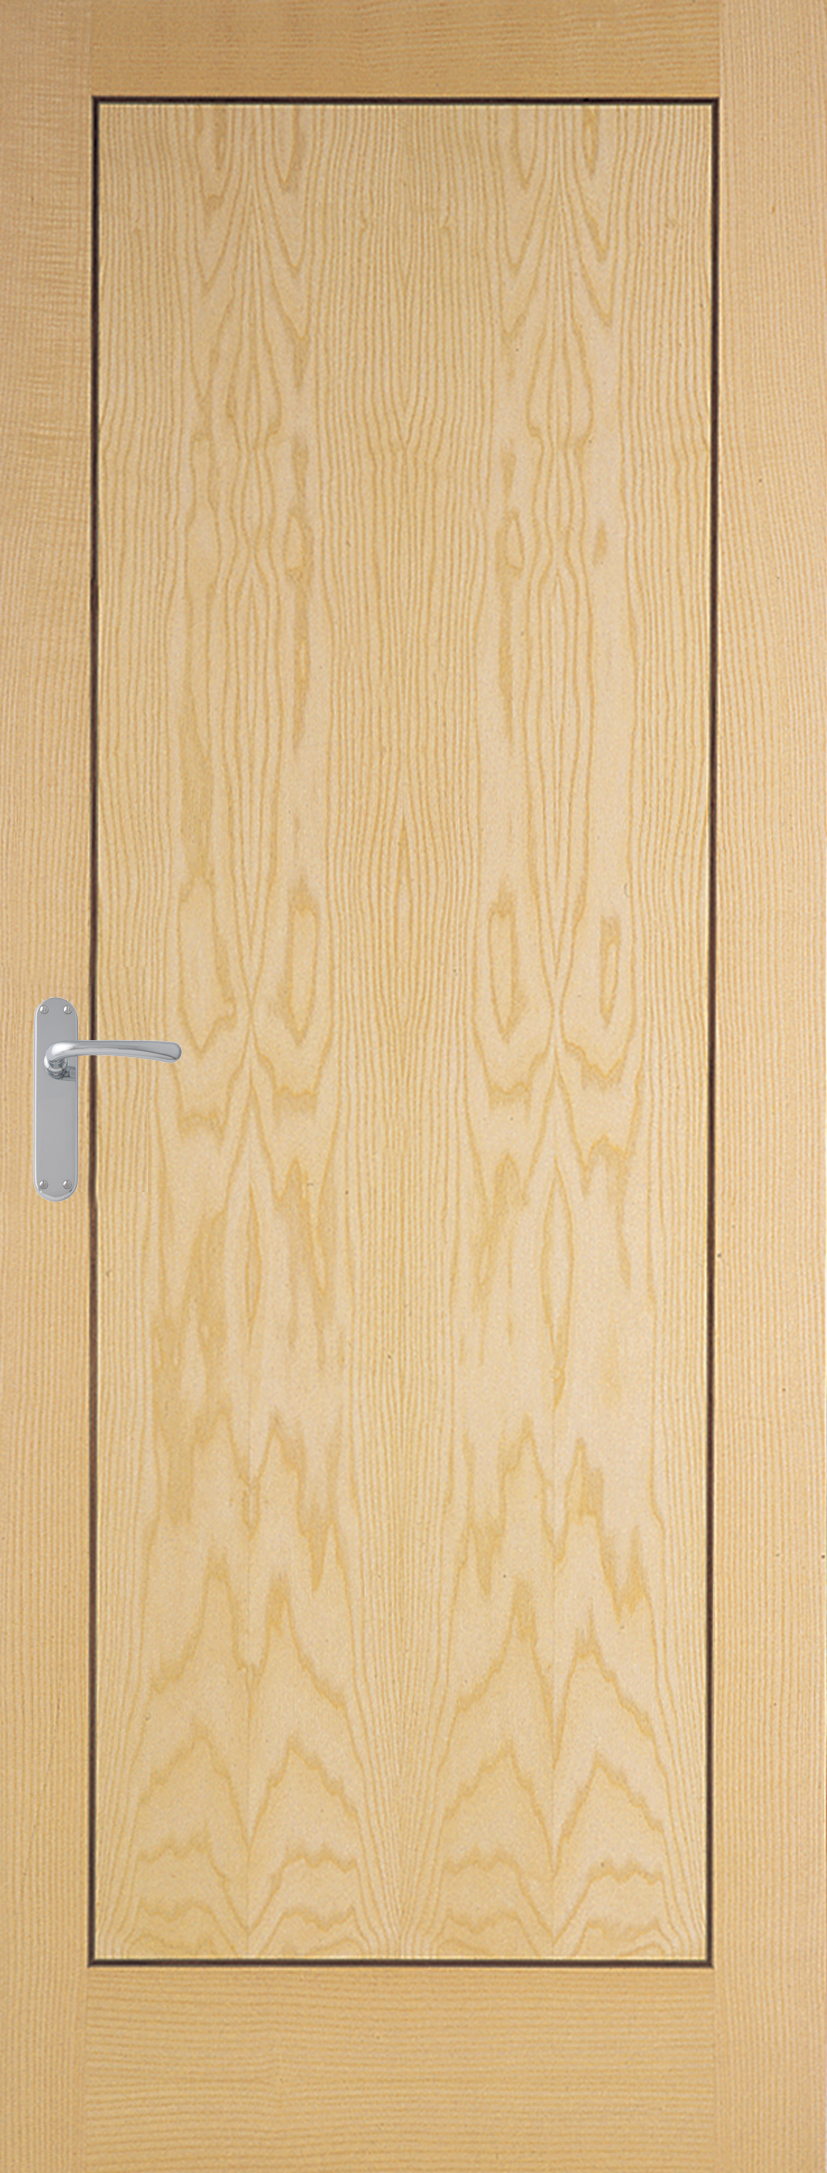 Innova Ash Veneer with Walnut Inlay internal door